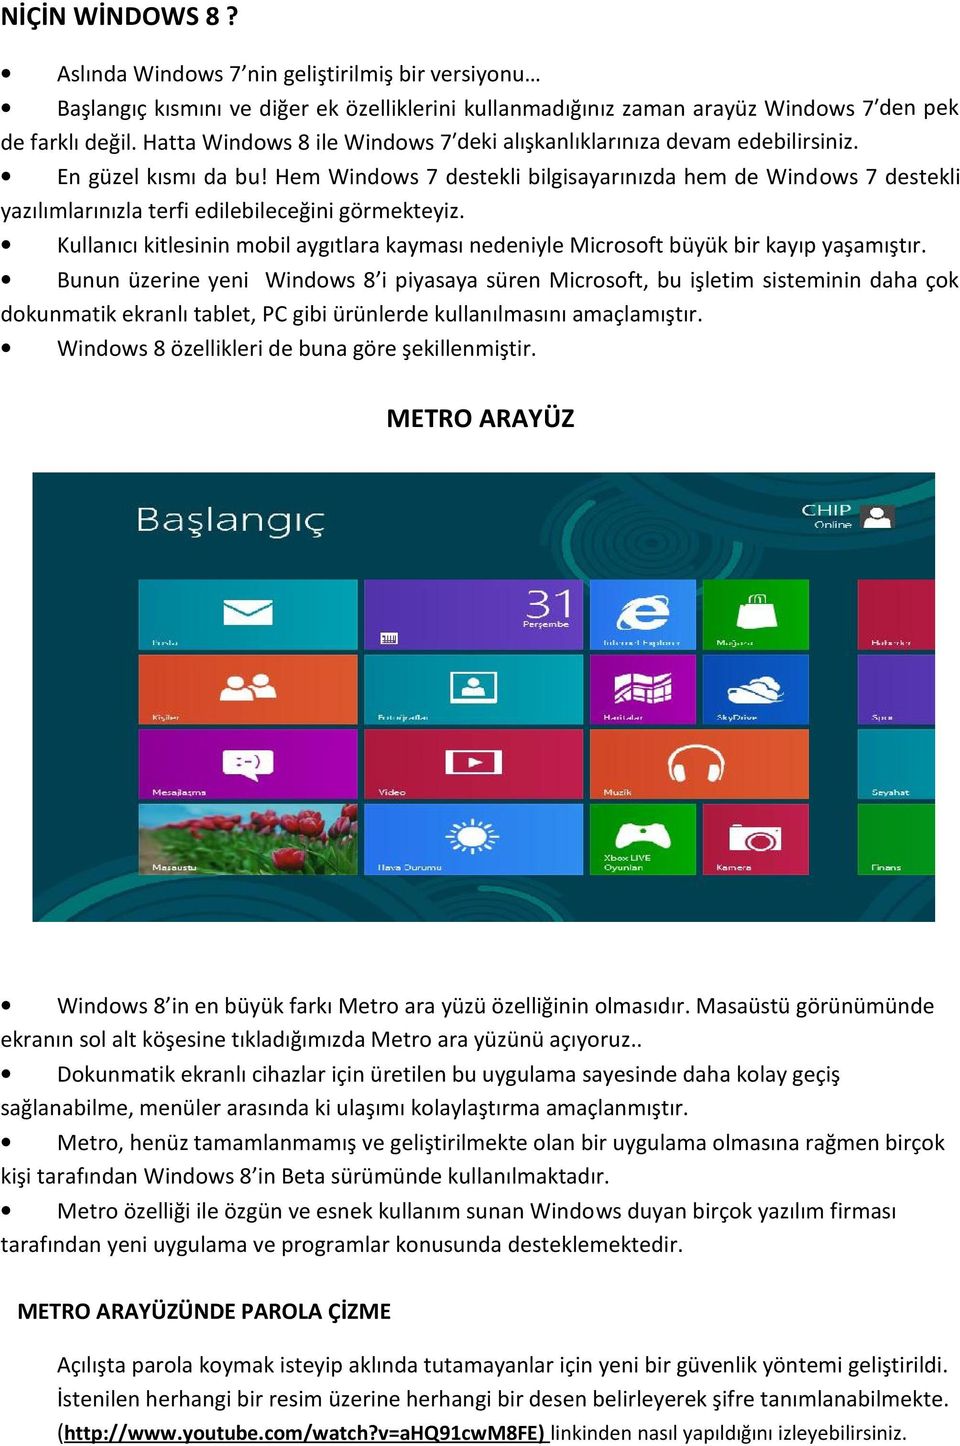 Hem Windows 7 destekli bilgisayarınızda hem de Windows 7 destekli yazılımlarınızla terfi edilebileceğini görmekteyiz.